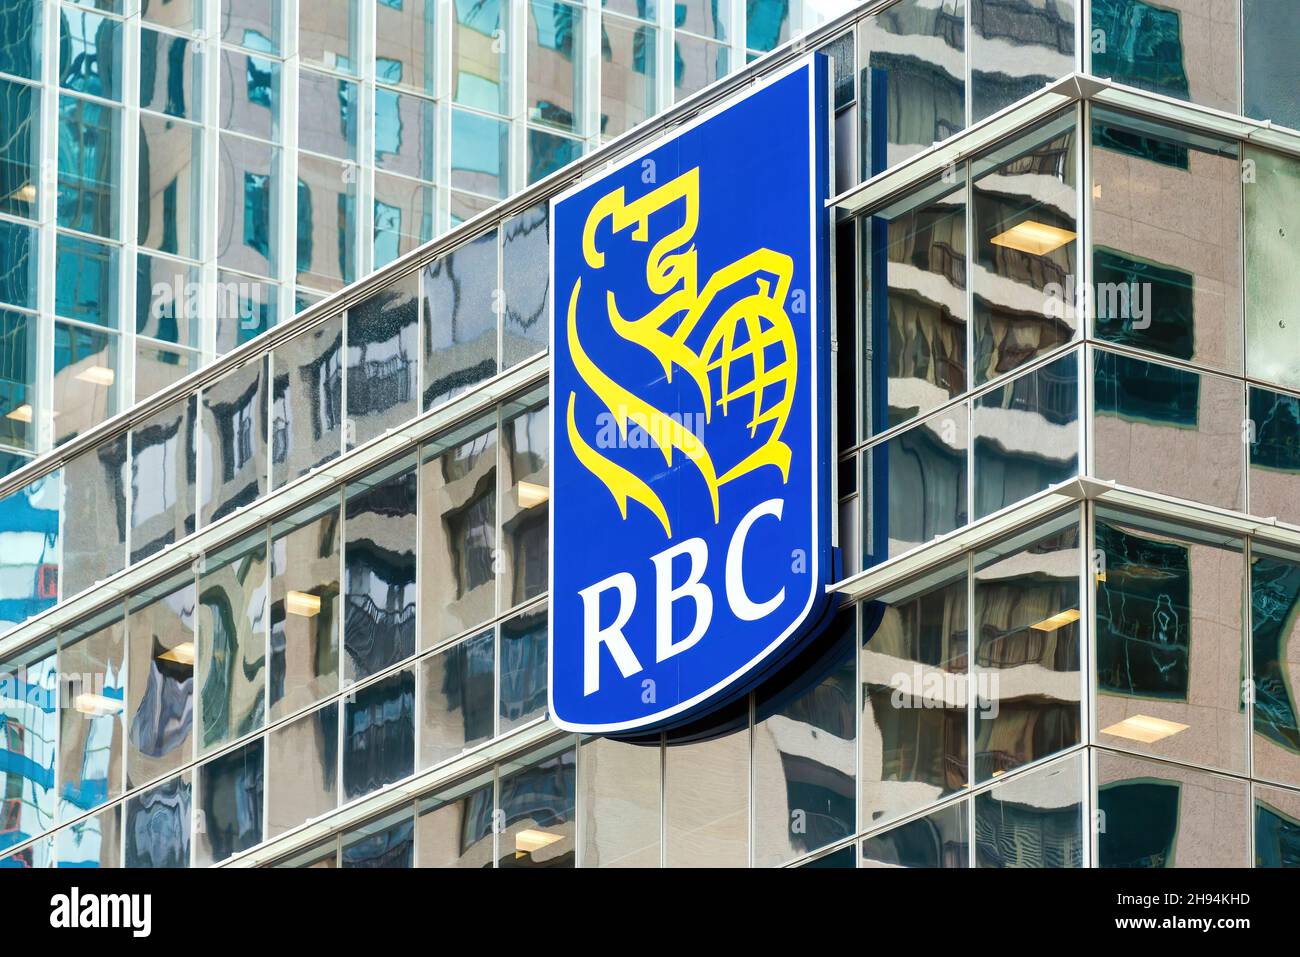 RBC or Royal Bank of Canada logo seen on the glass facade of a modern building. Nov. 22, 2021 Stock Photo